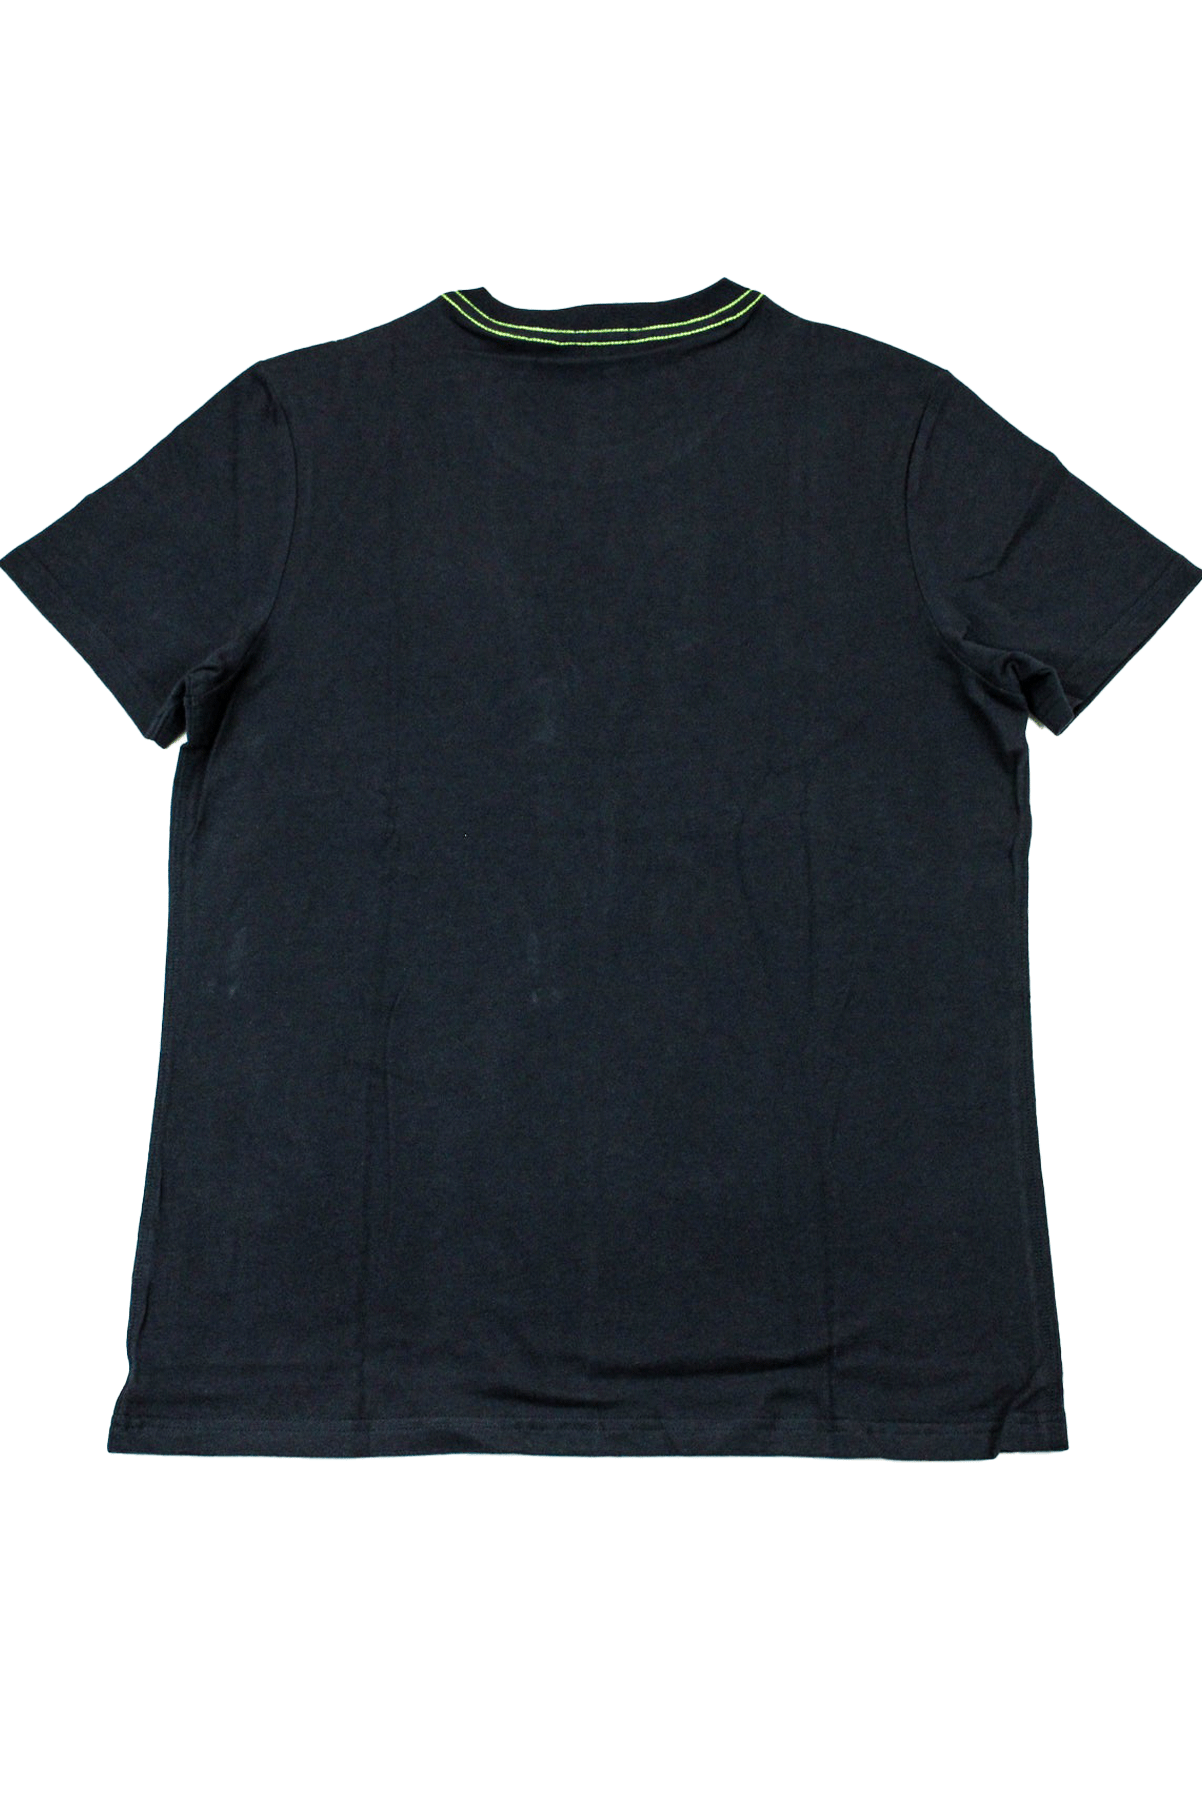 Vertigo Navy T-Shirt